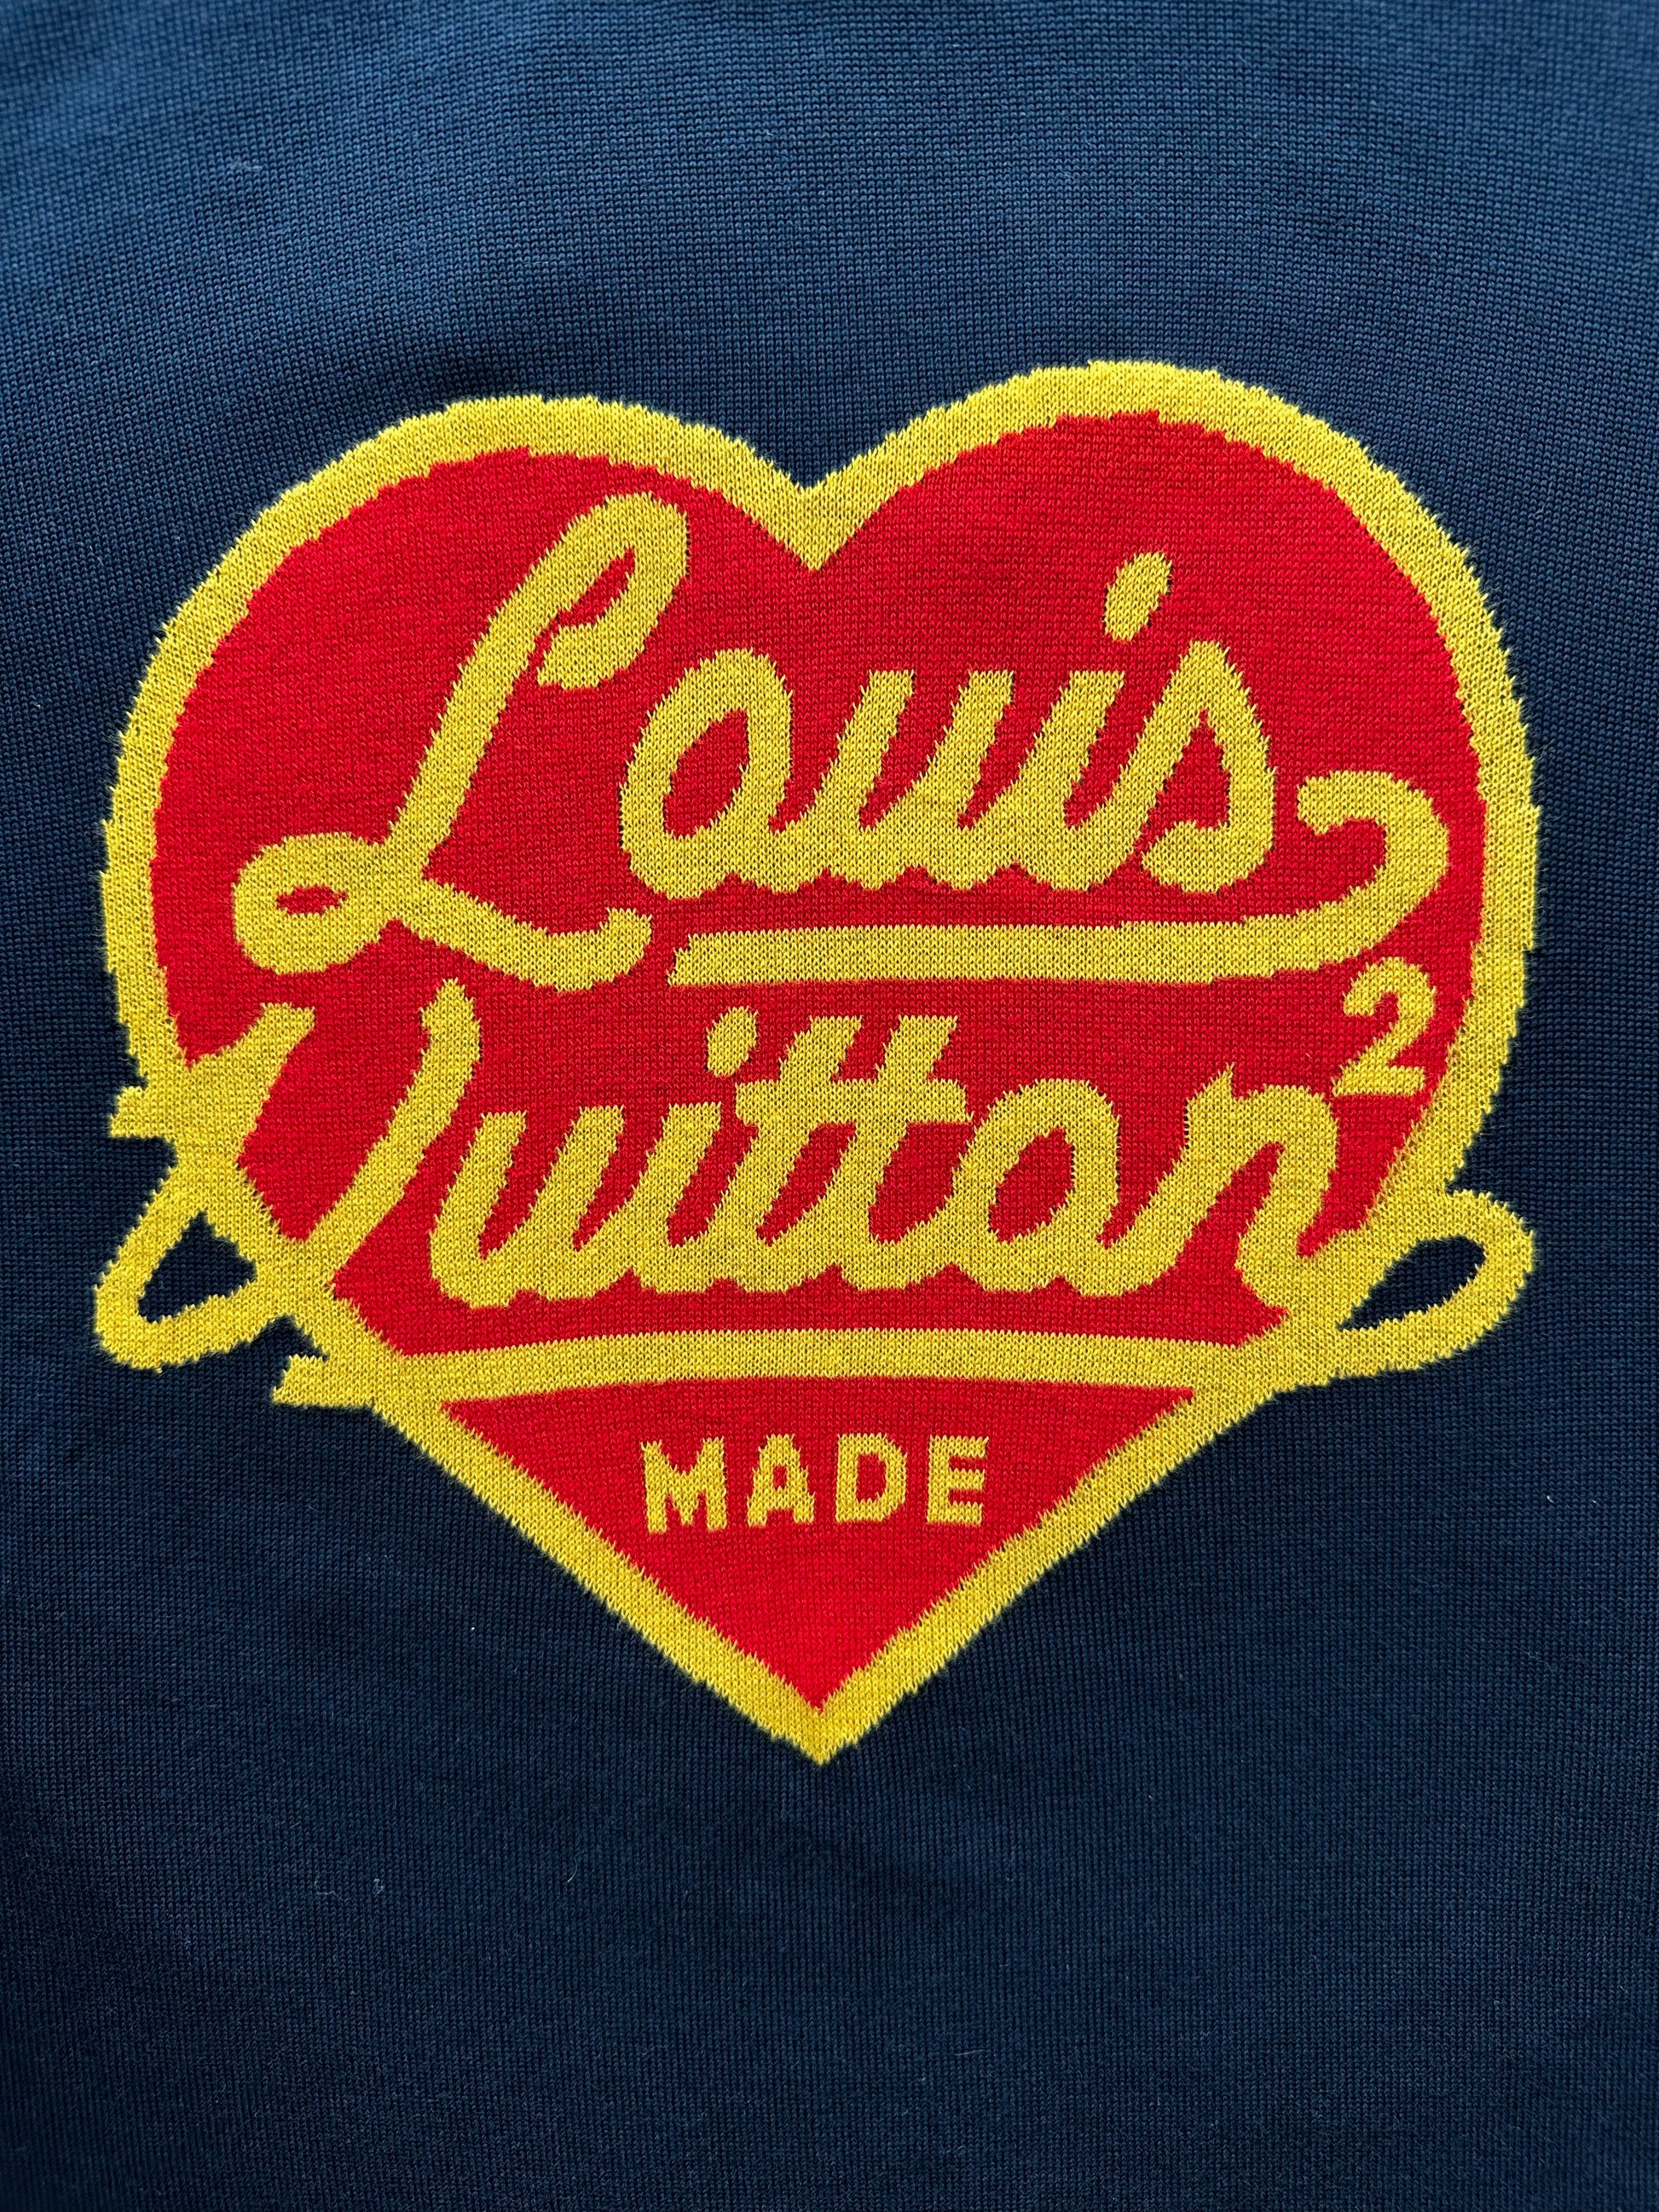 Louis Vuitton Navy Blue Cotton Sleeve Heart Neck Short Sleeve T-Shirt S Louis  Vuitton